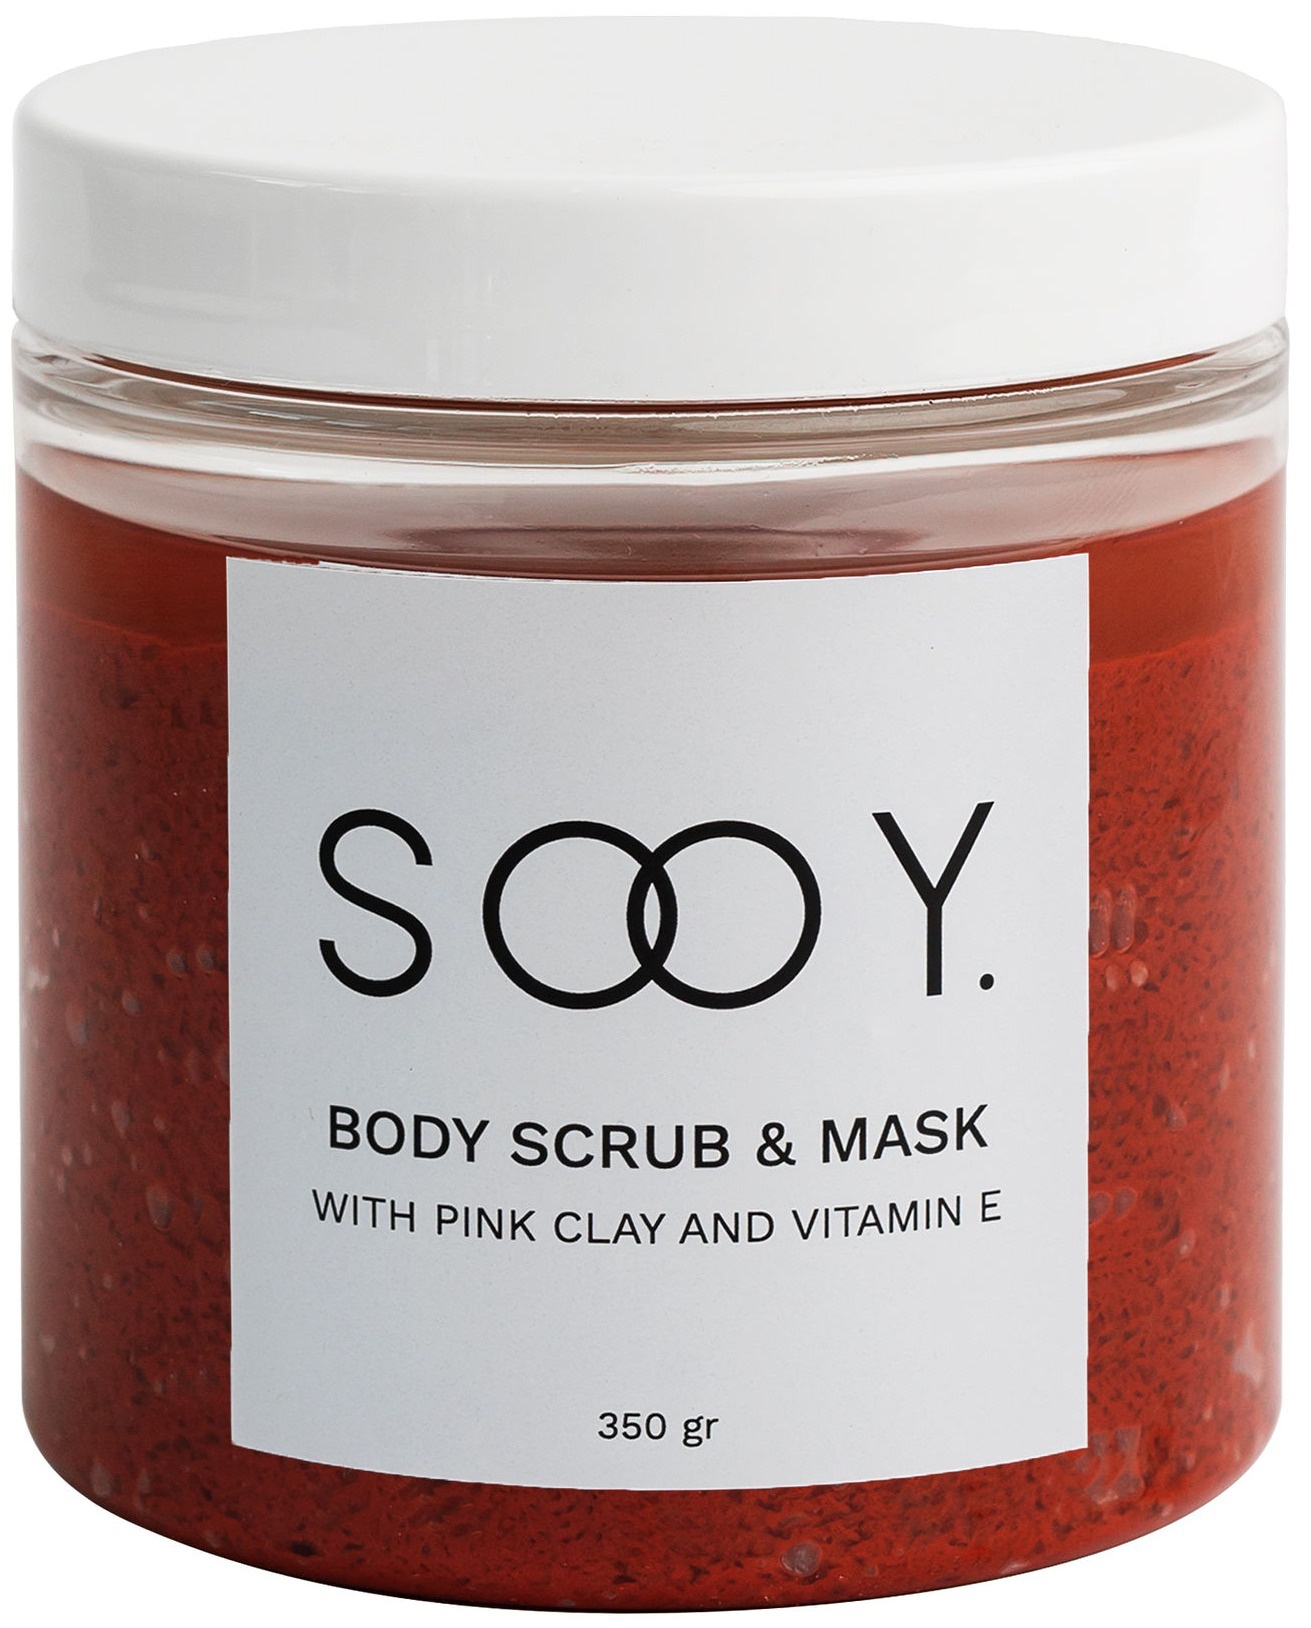 SOOY Body Scrub & Mask